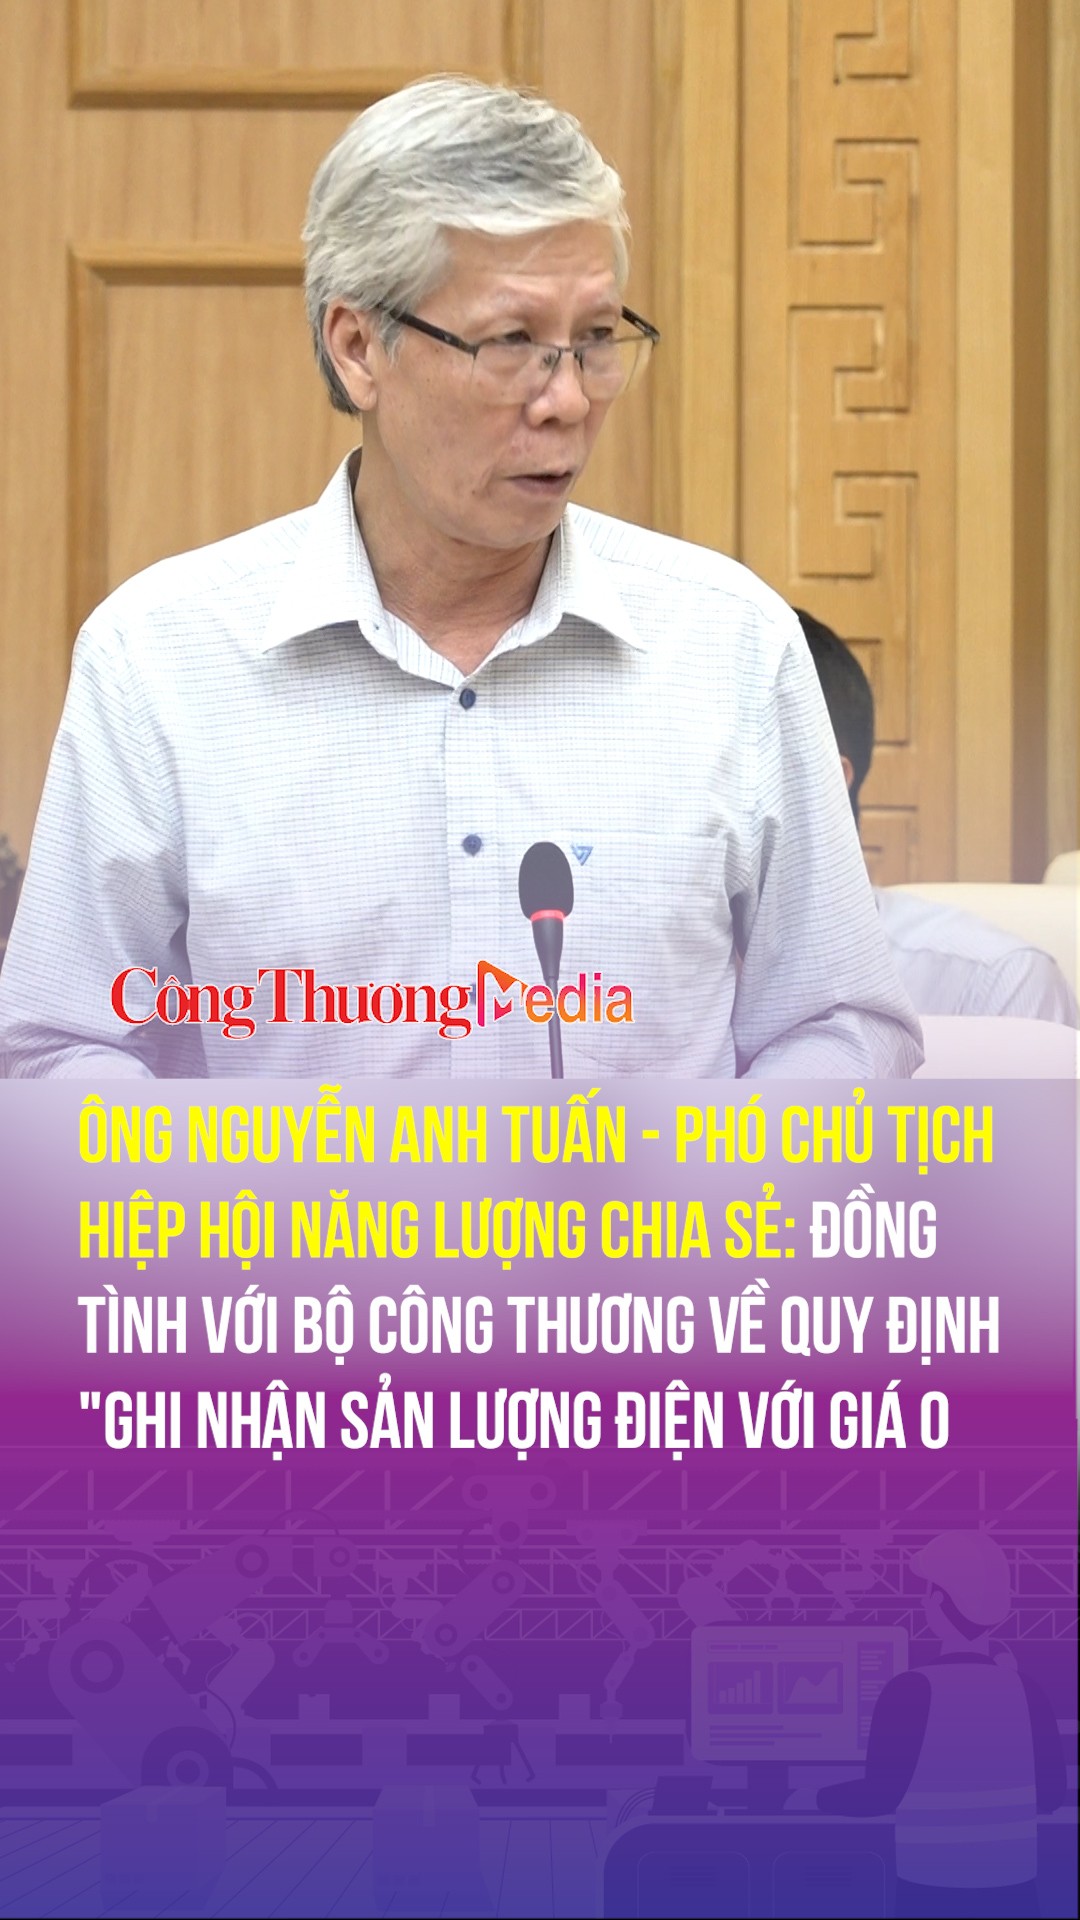 Ông Nguyễn Anh Tuấn: Đồng tình với Bộ Công Thương về quy định "ghi nhận sản lượng điện với giá 0 đồng"